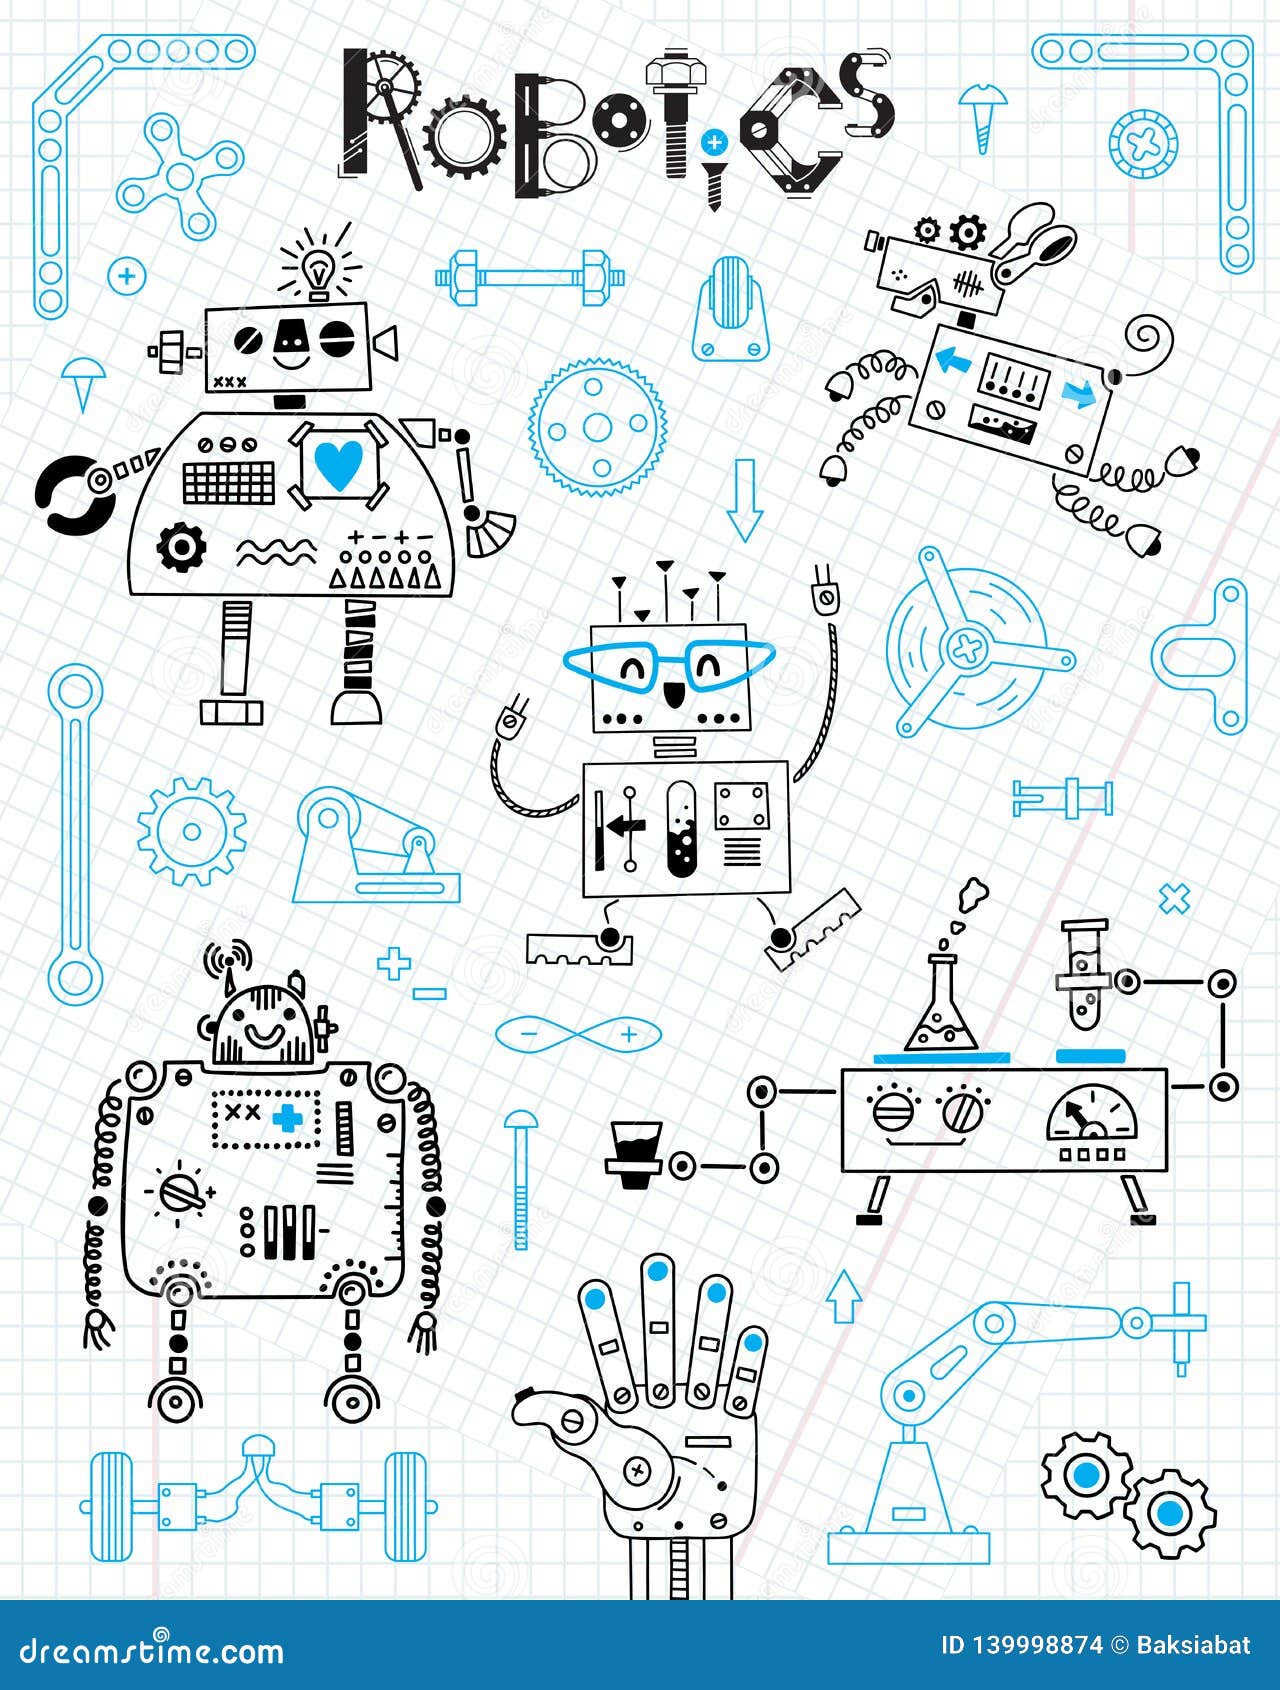 Græder screech Udstyre Robotics for Kids. Set of Design Elements. Robots and Details for  Construction Stock Vector - Illustration of character, metal: 139998874